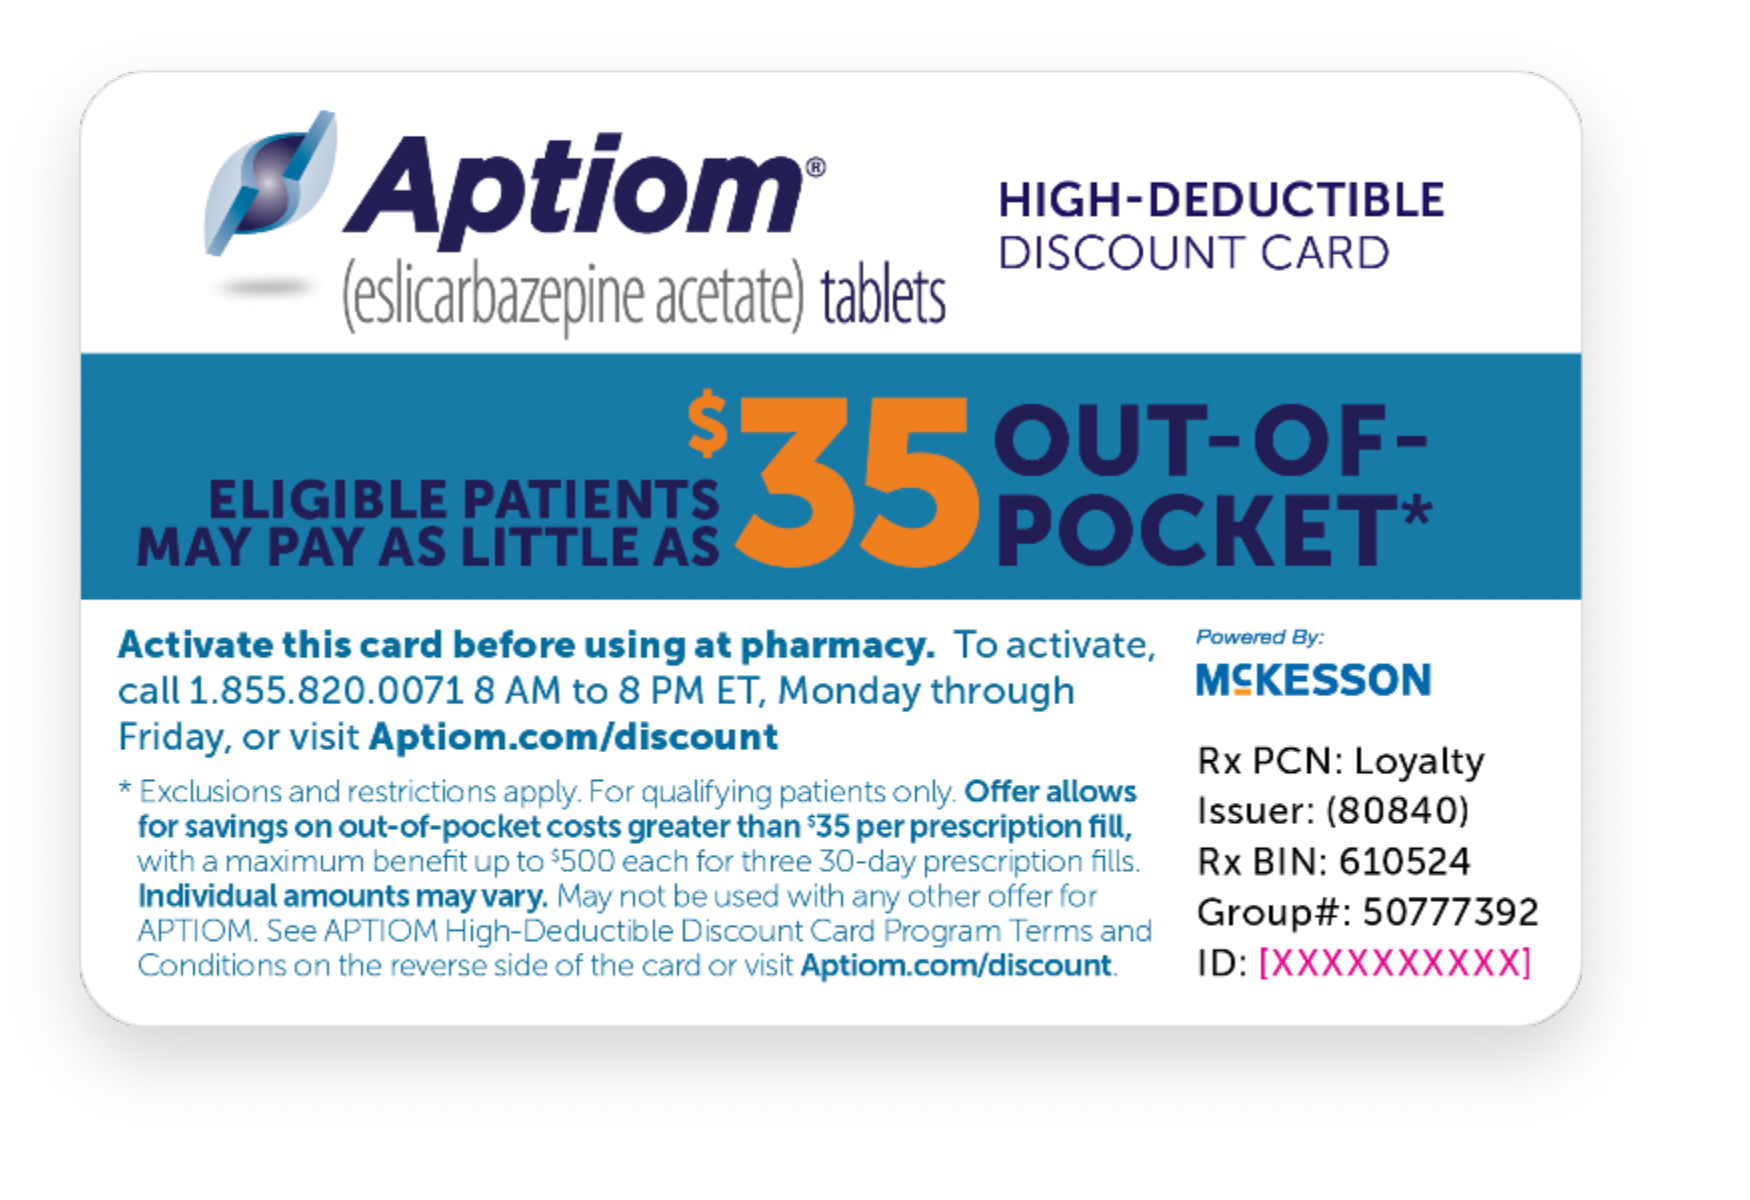 APTIOM High-Deductible Discount Card